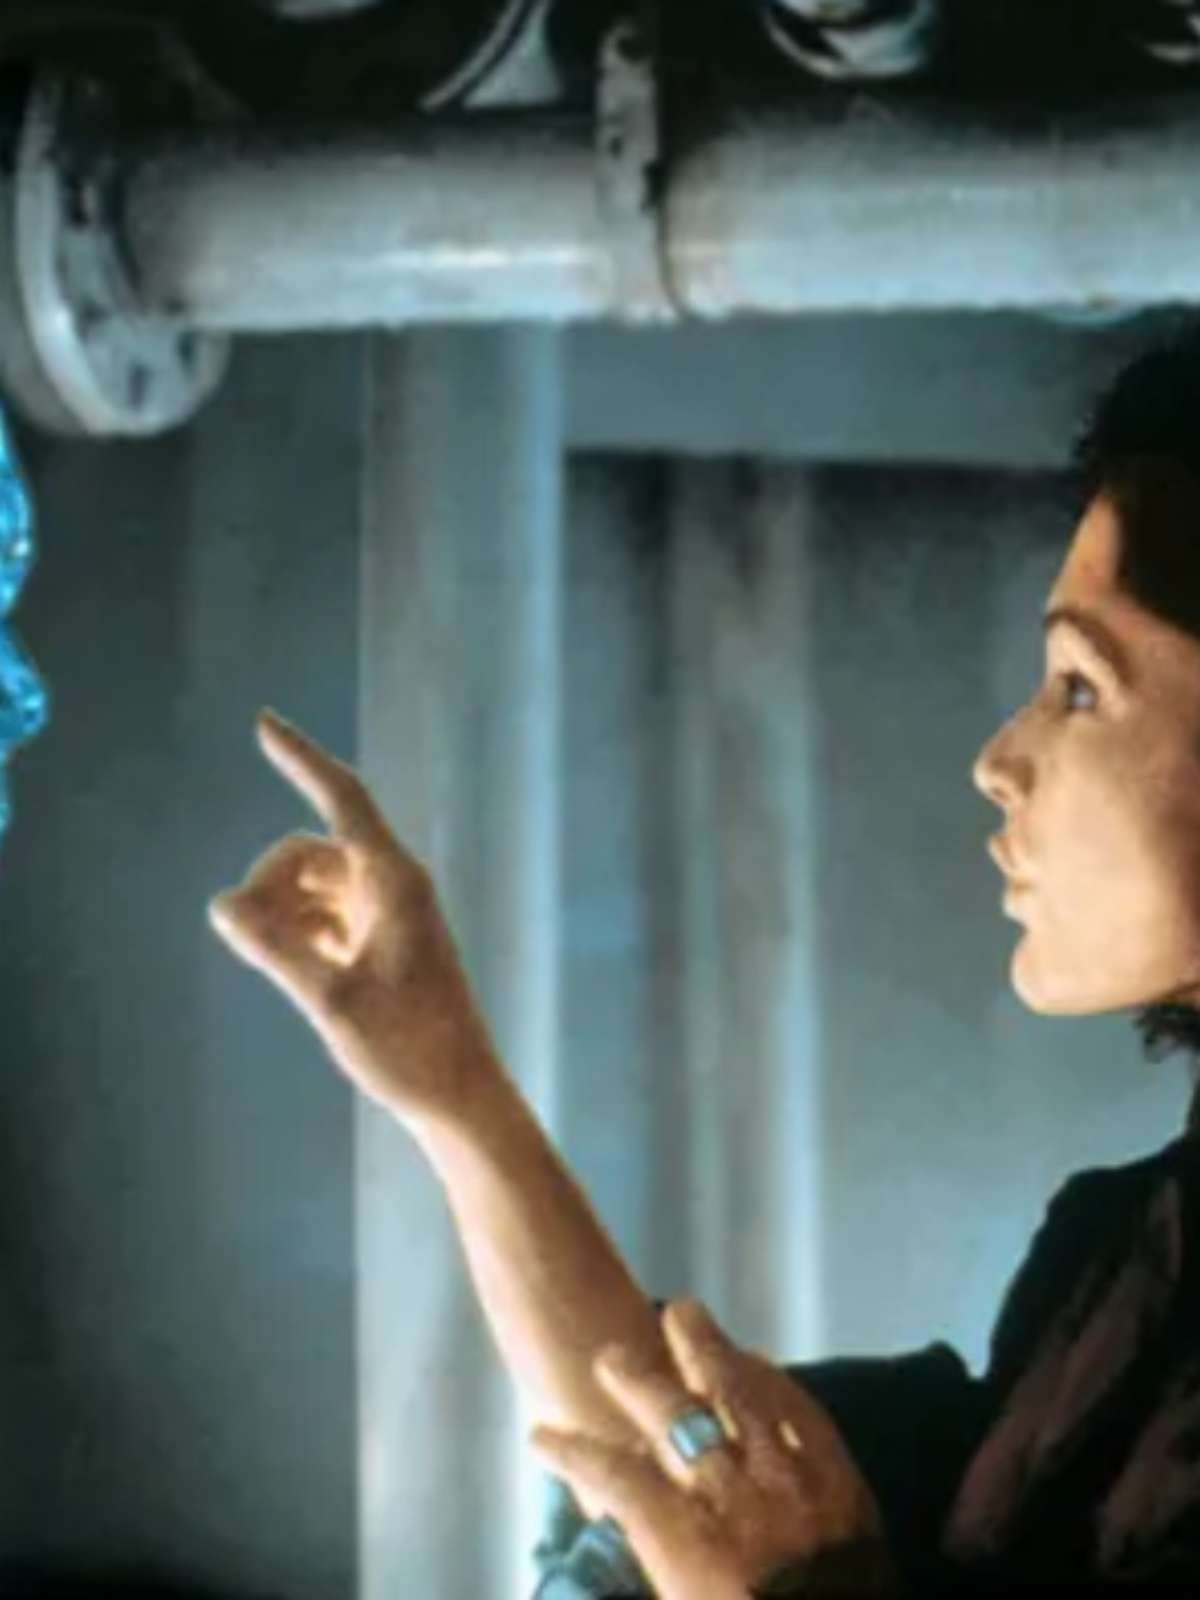 Diretor de Titanic e Avatar volta após explorar o segredo do abismo –  Matéria Incógnita